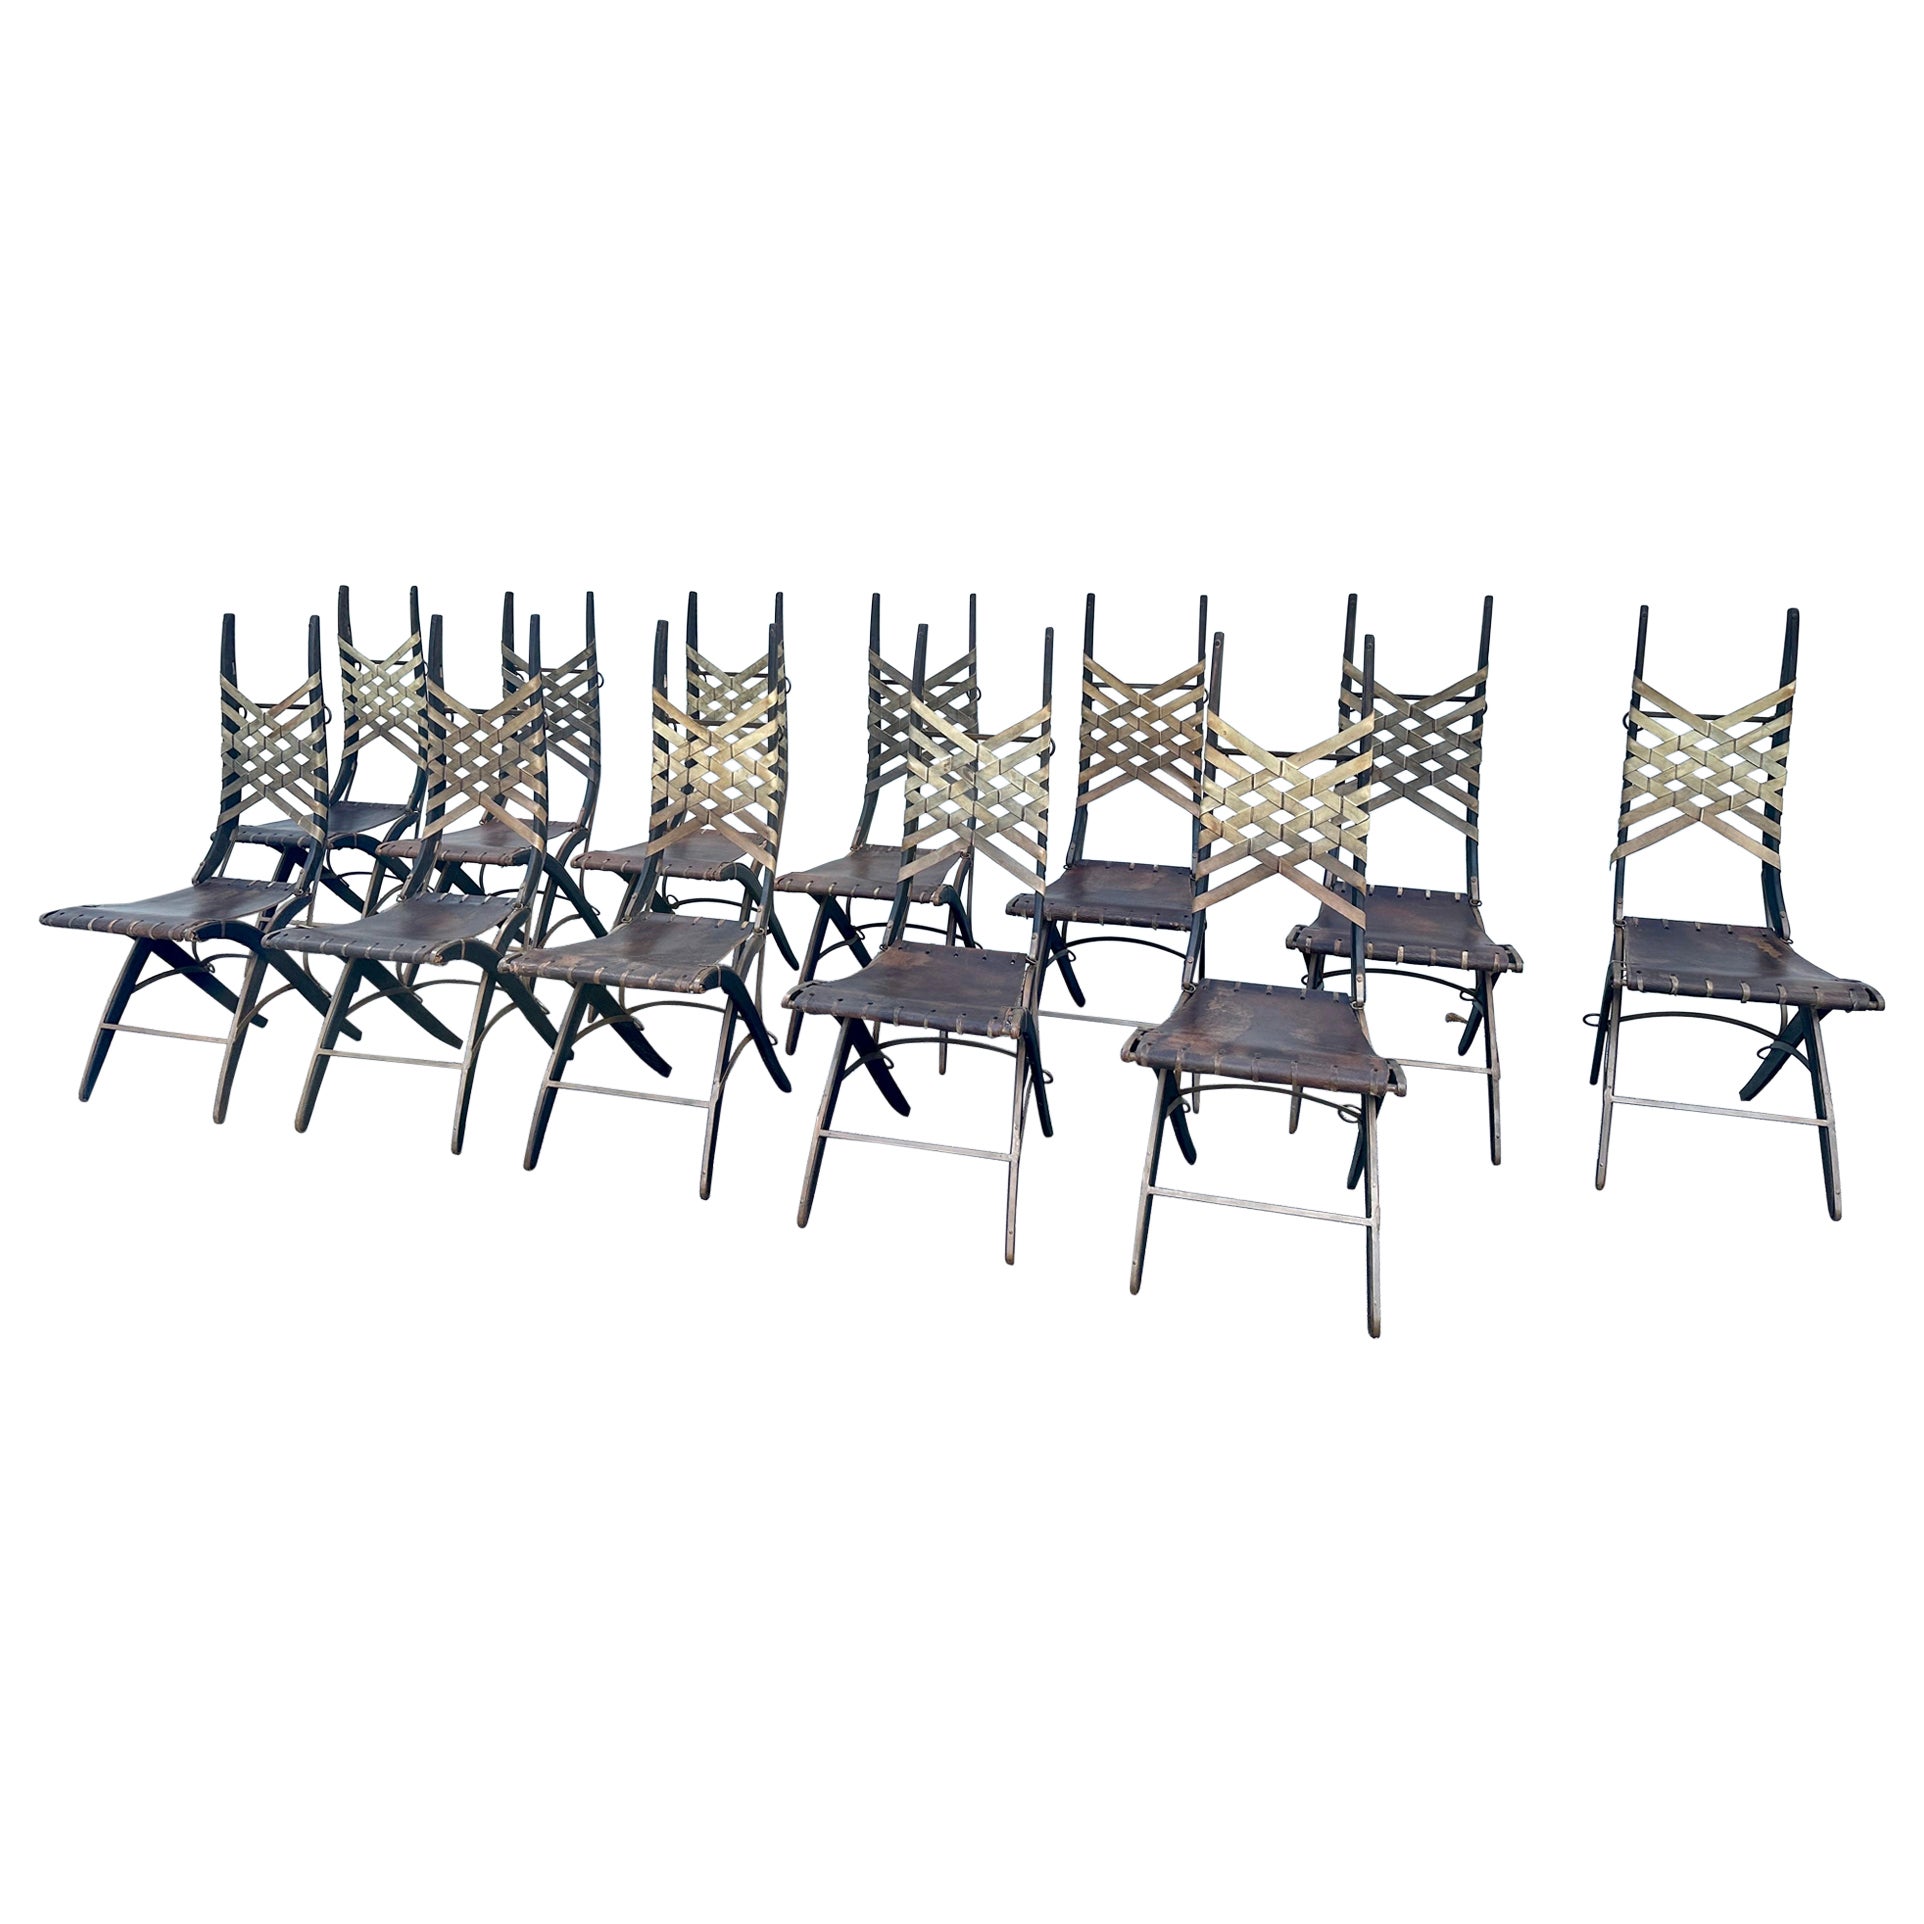 Alberto Marconetti, ensemble de 12 chaises de salle à manger originales en chêne, fer et cuir avec sangles